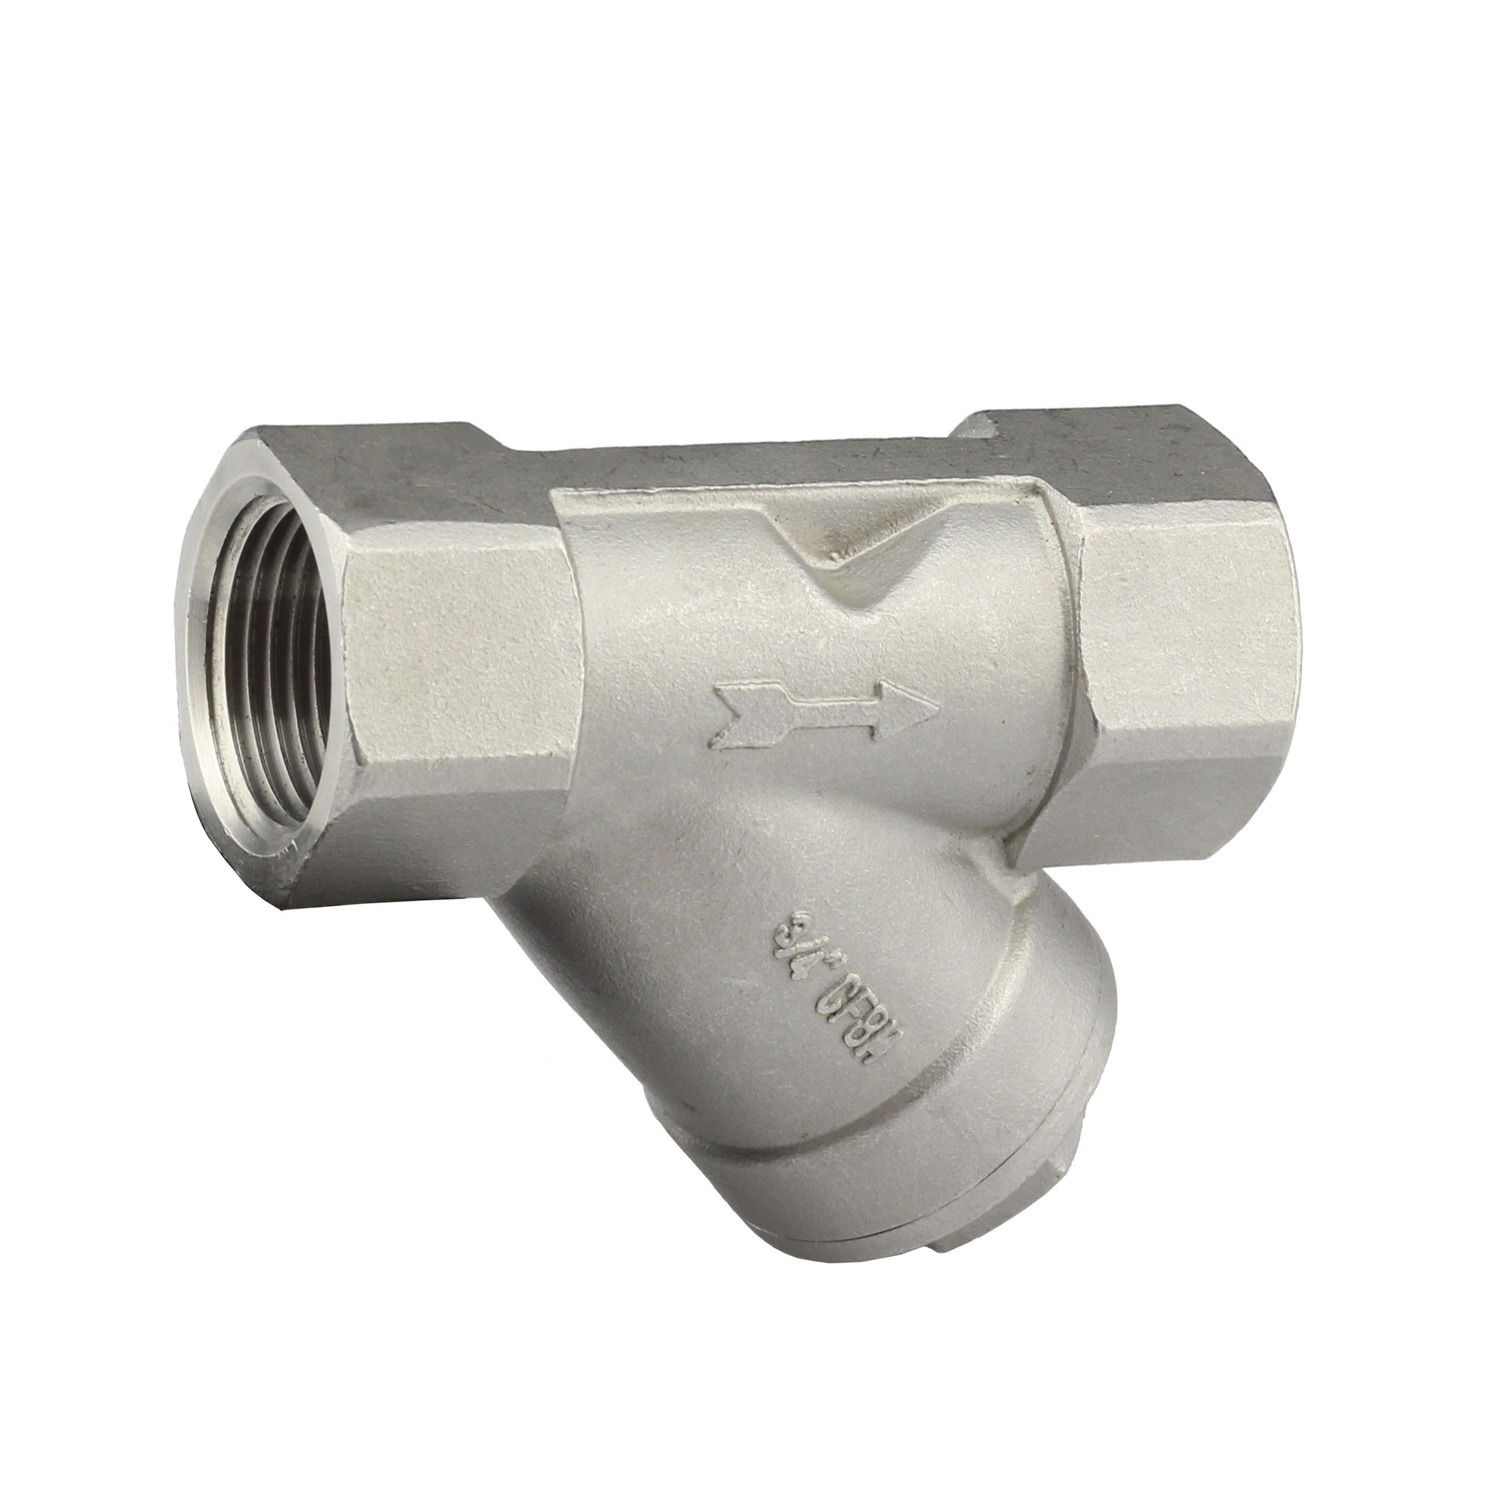 3Pc spring vertical check valve